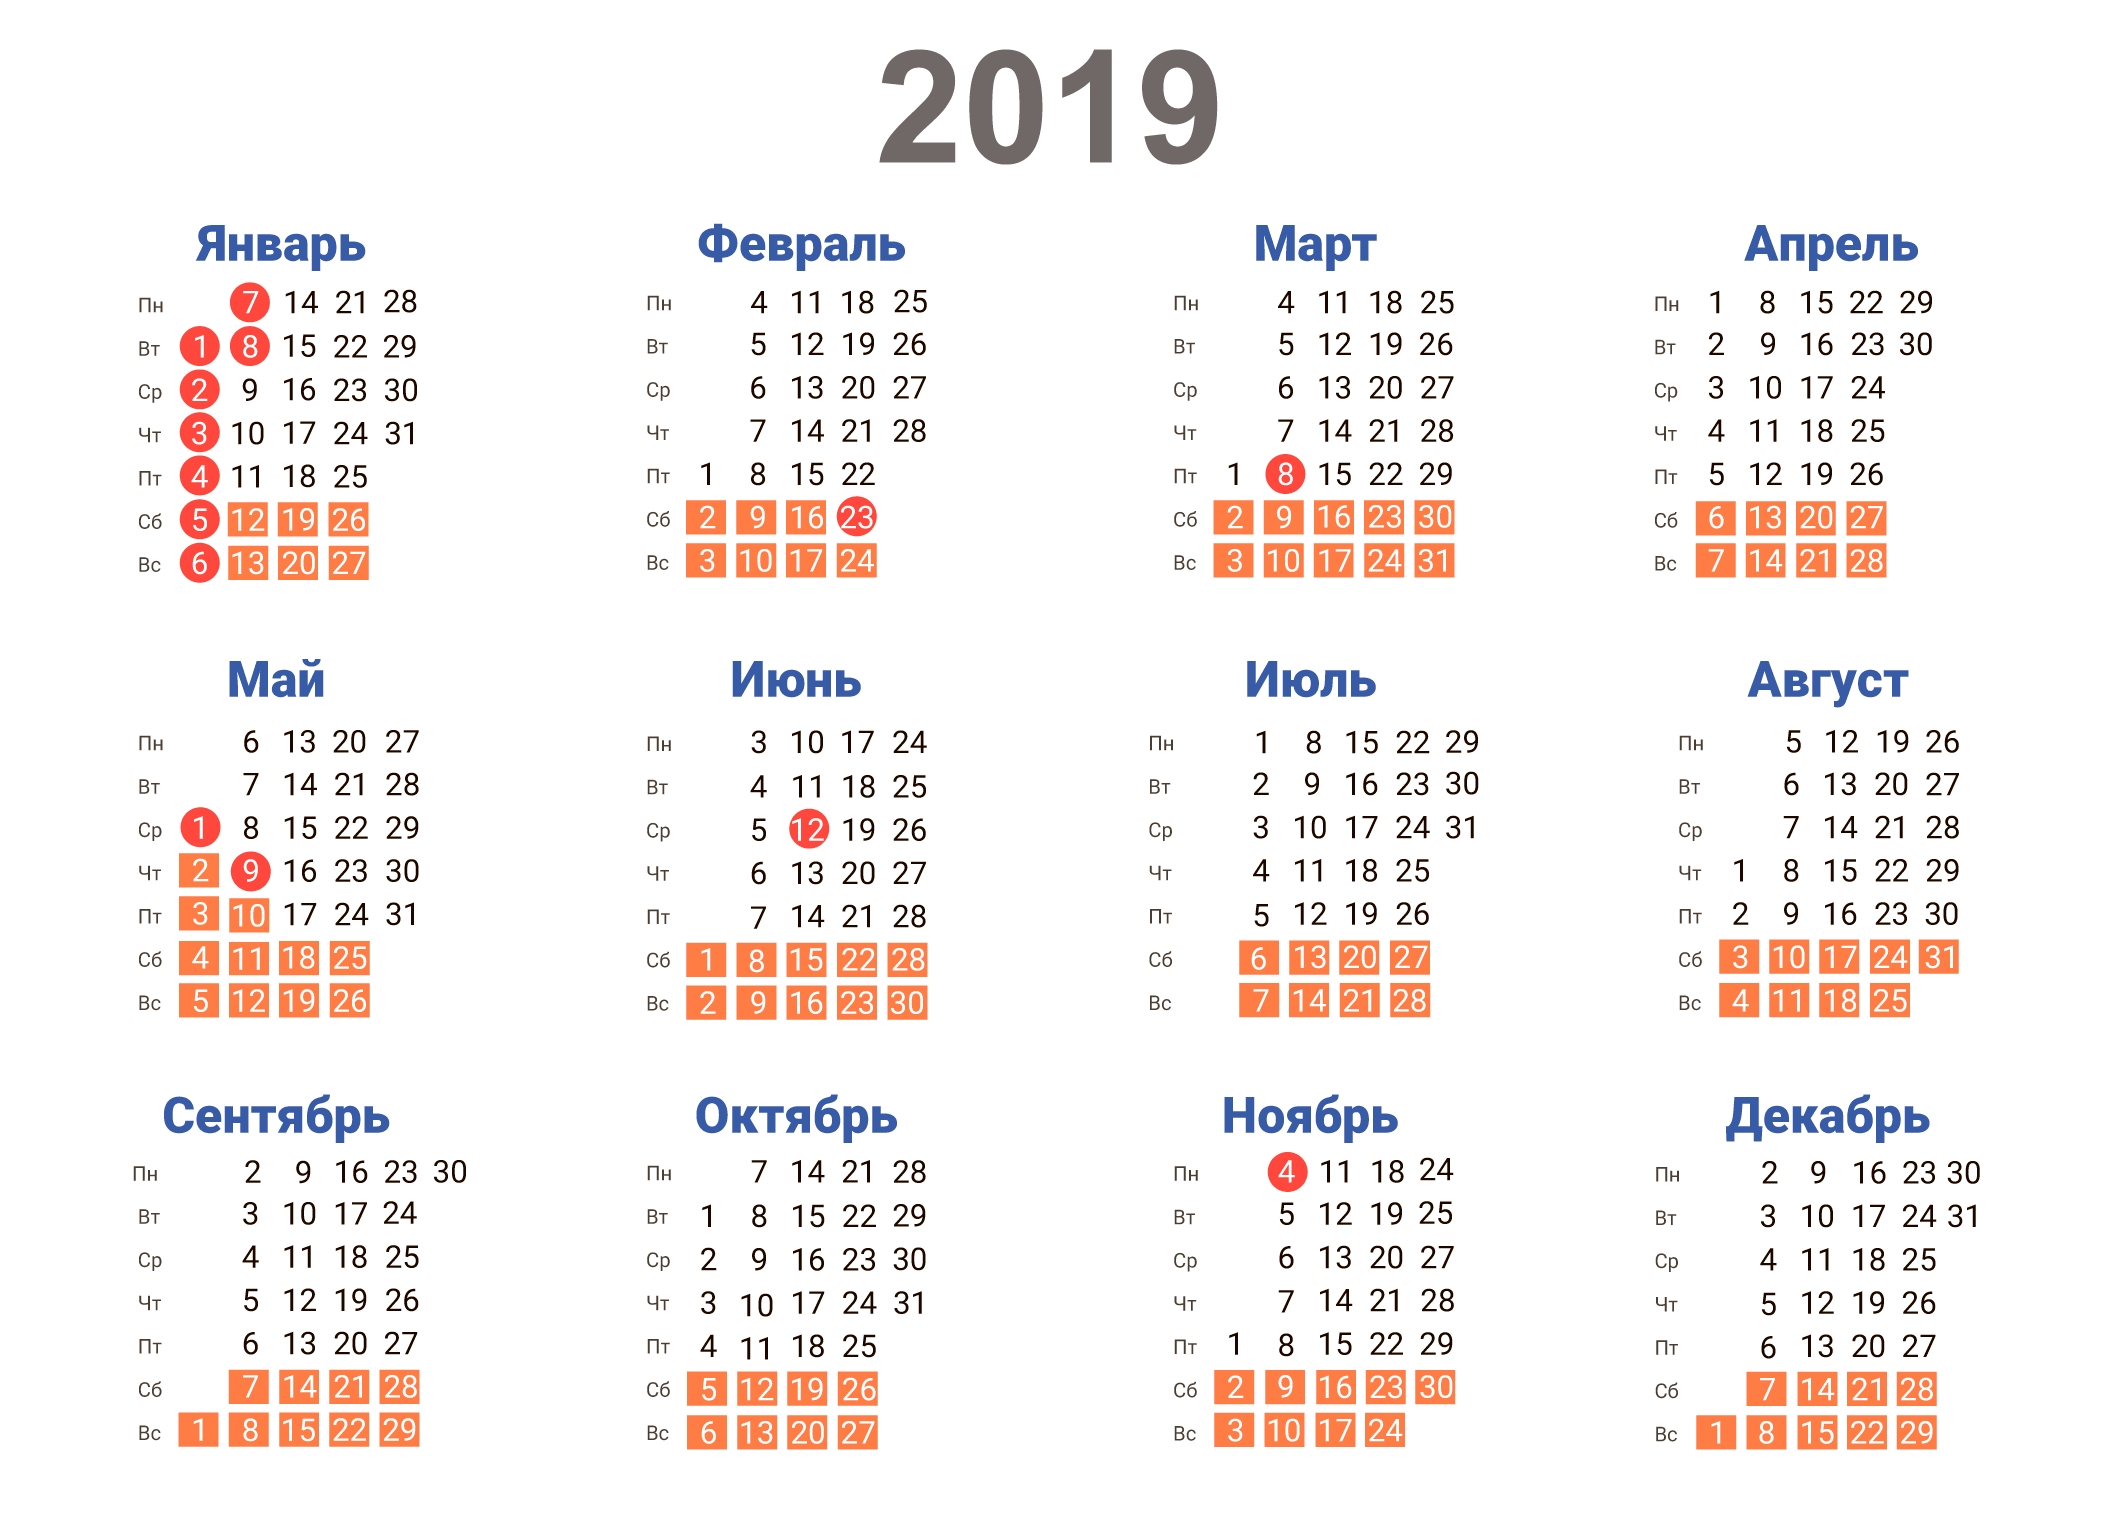 Скачать Календарь На 2019 Год В Форматах: Word, Pdf, Jpg